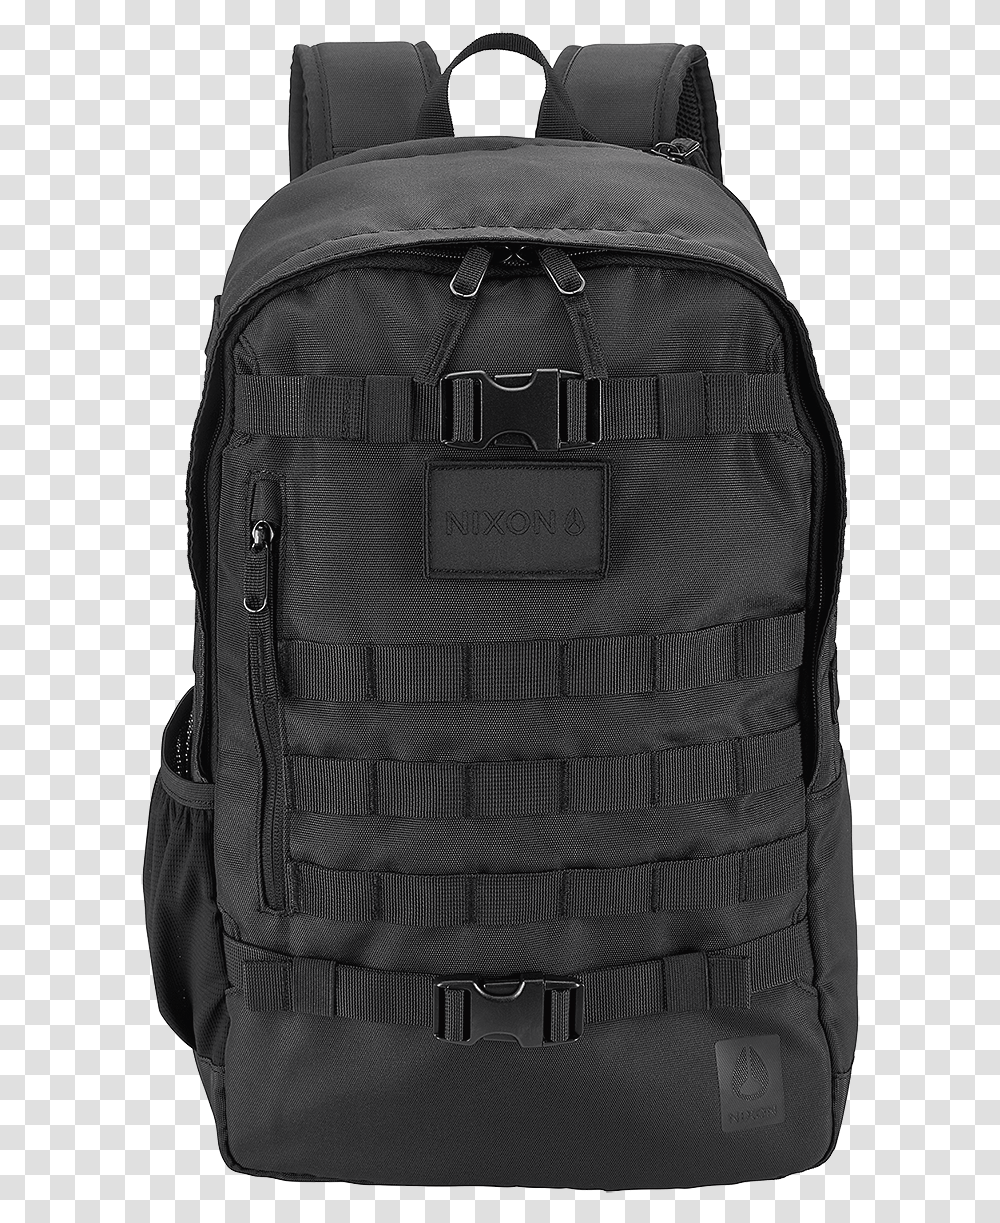 Nixon Smith Backpack Gt, Bag Transparent Png